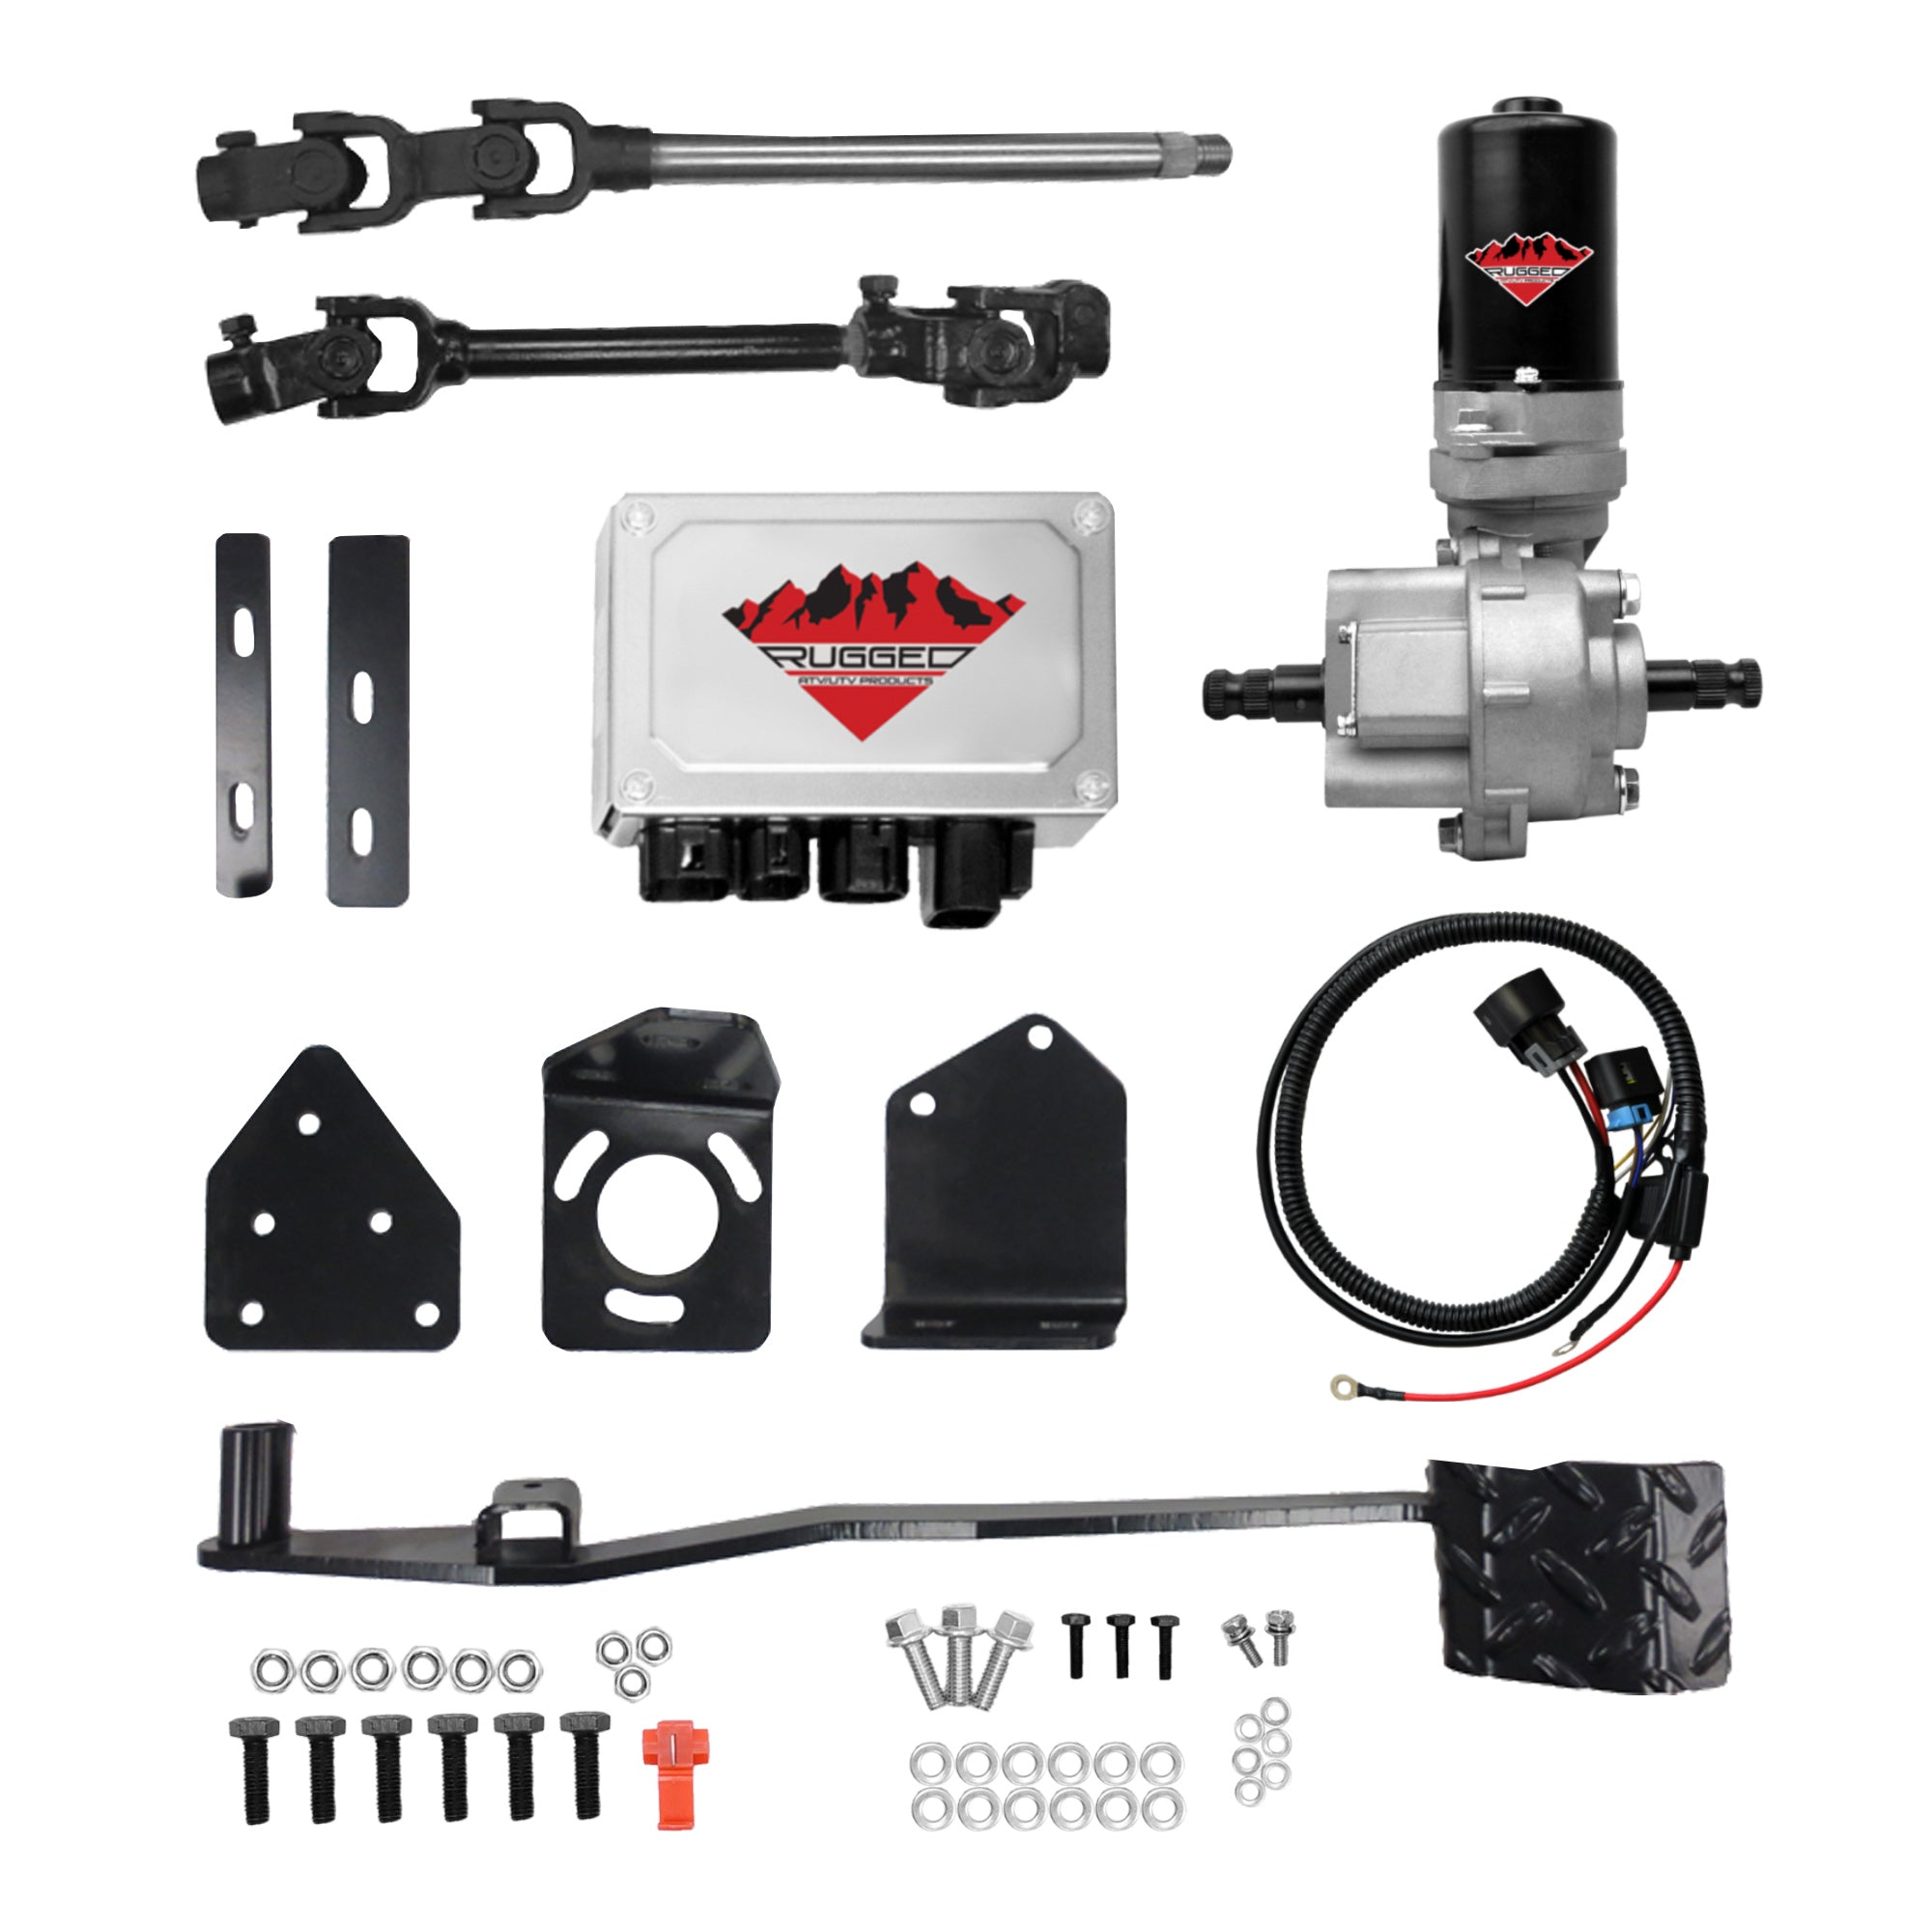 Electric Power Steering Kit for Polaris Ranger 570 